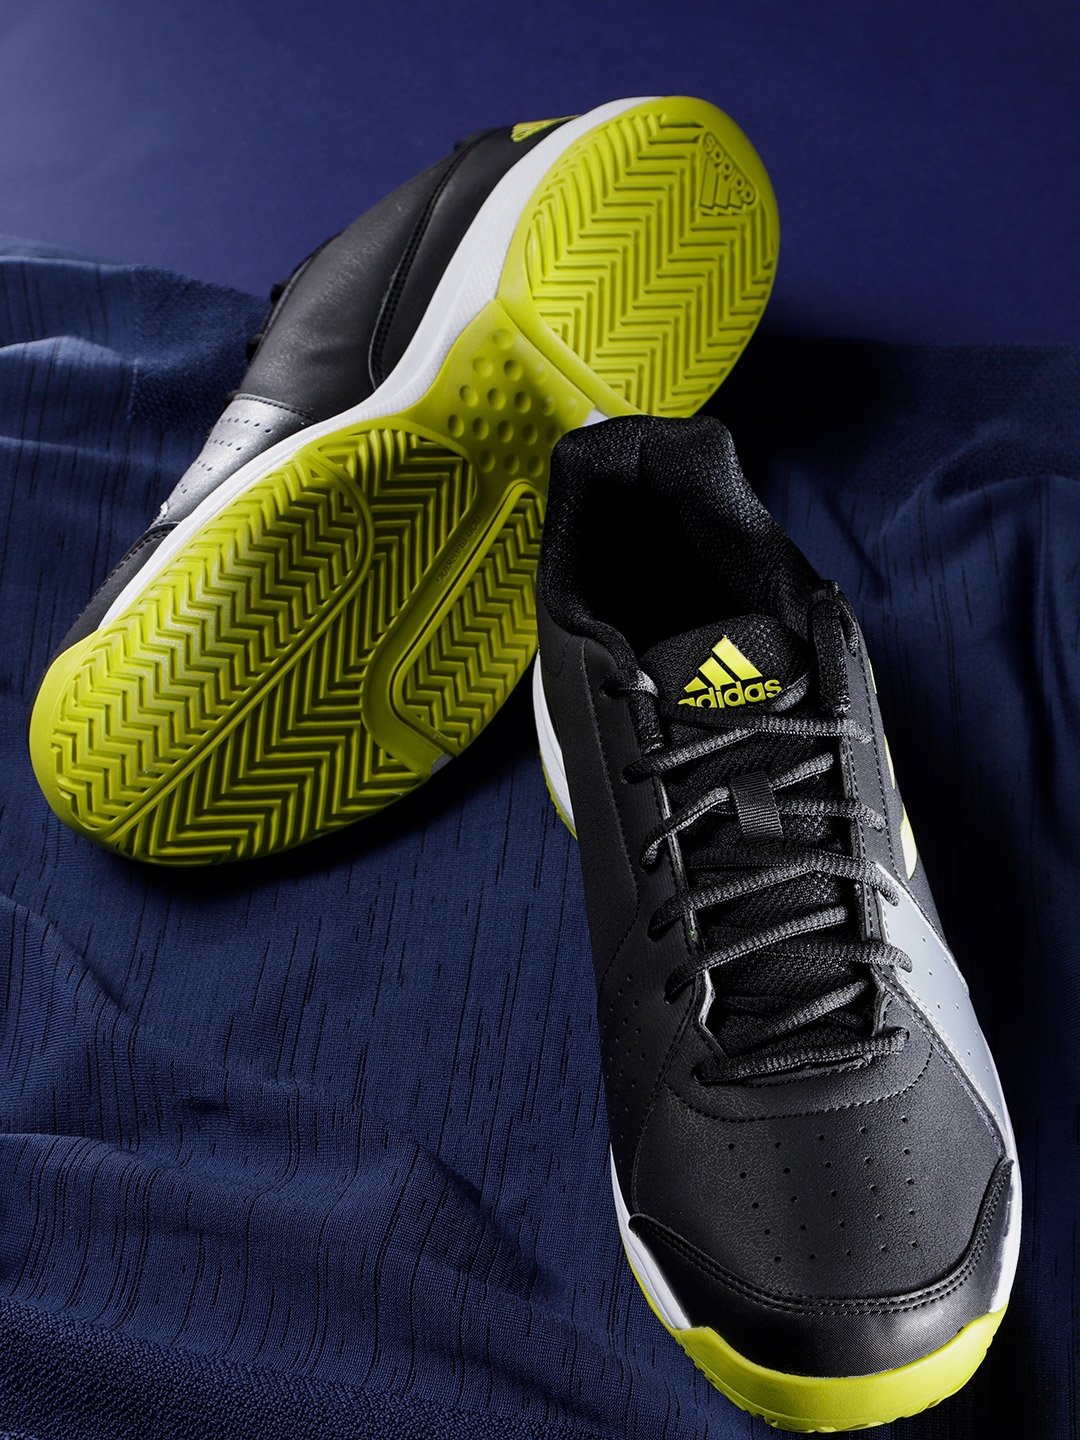 adidas men's approach tennis shoe